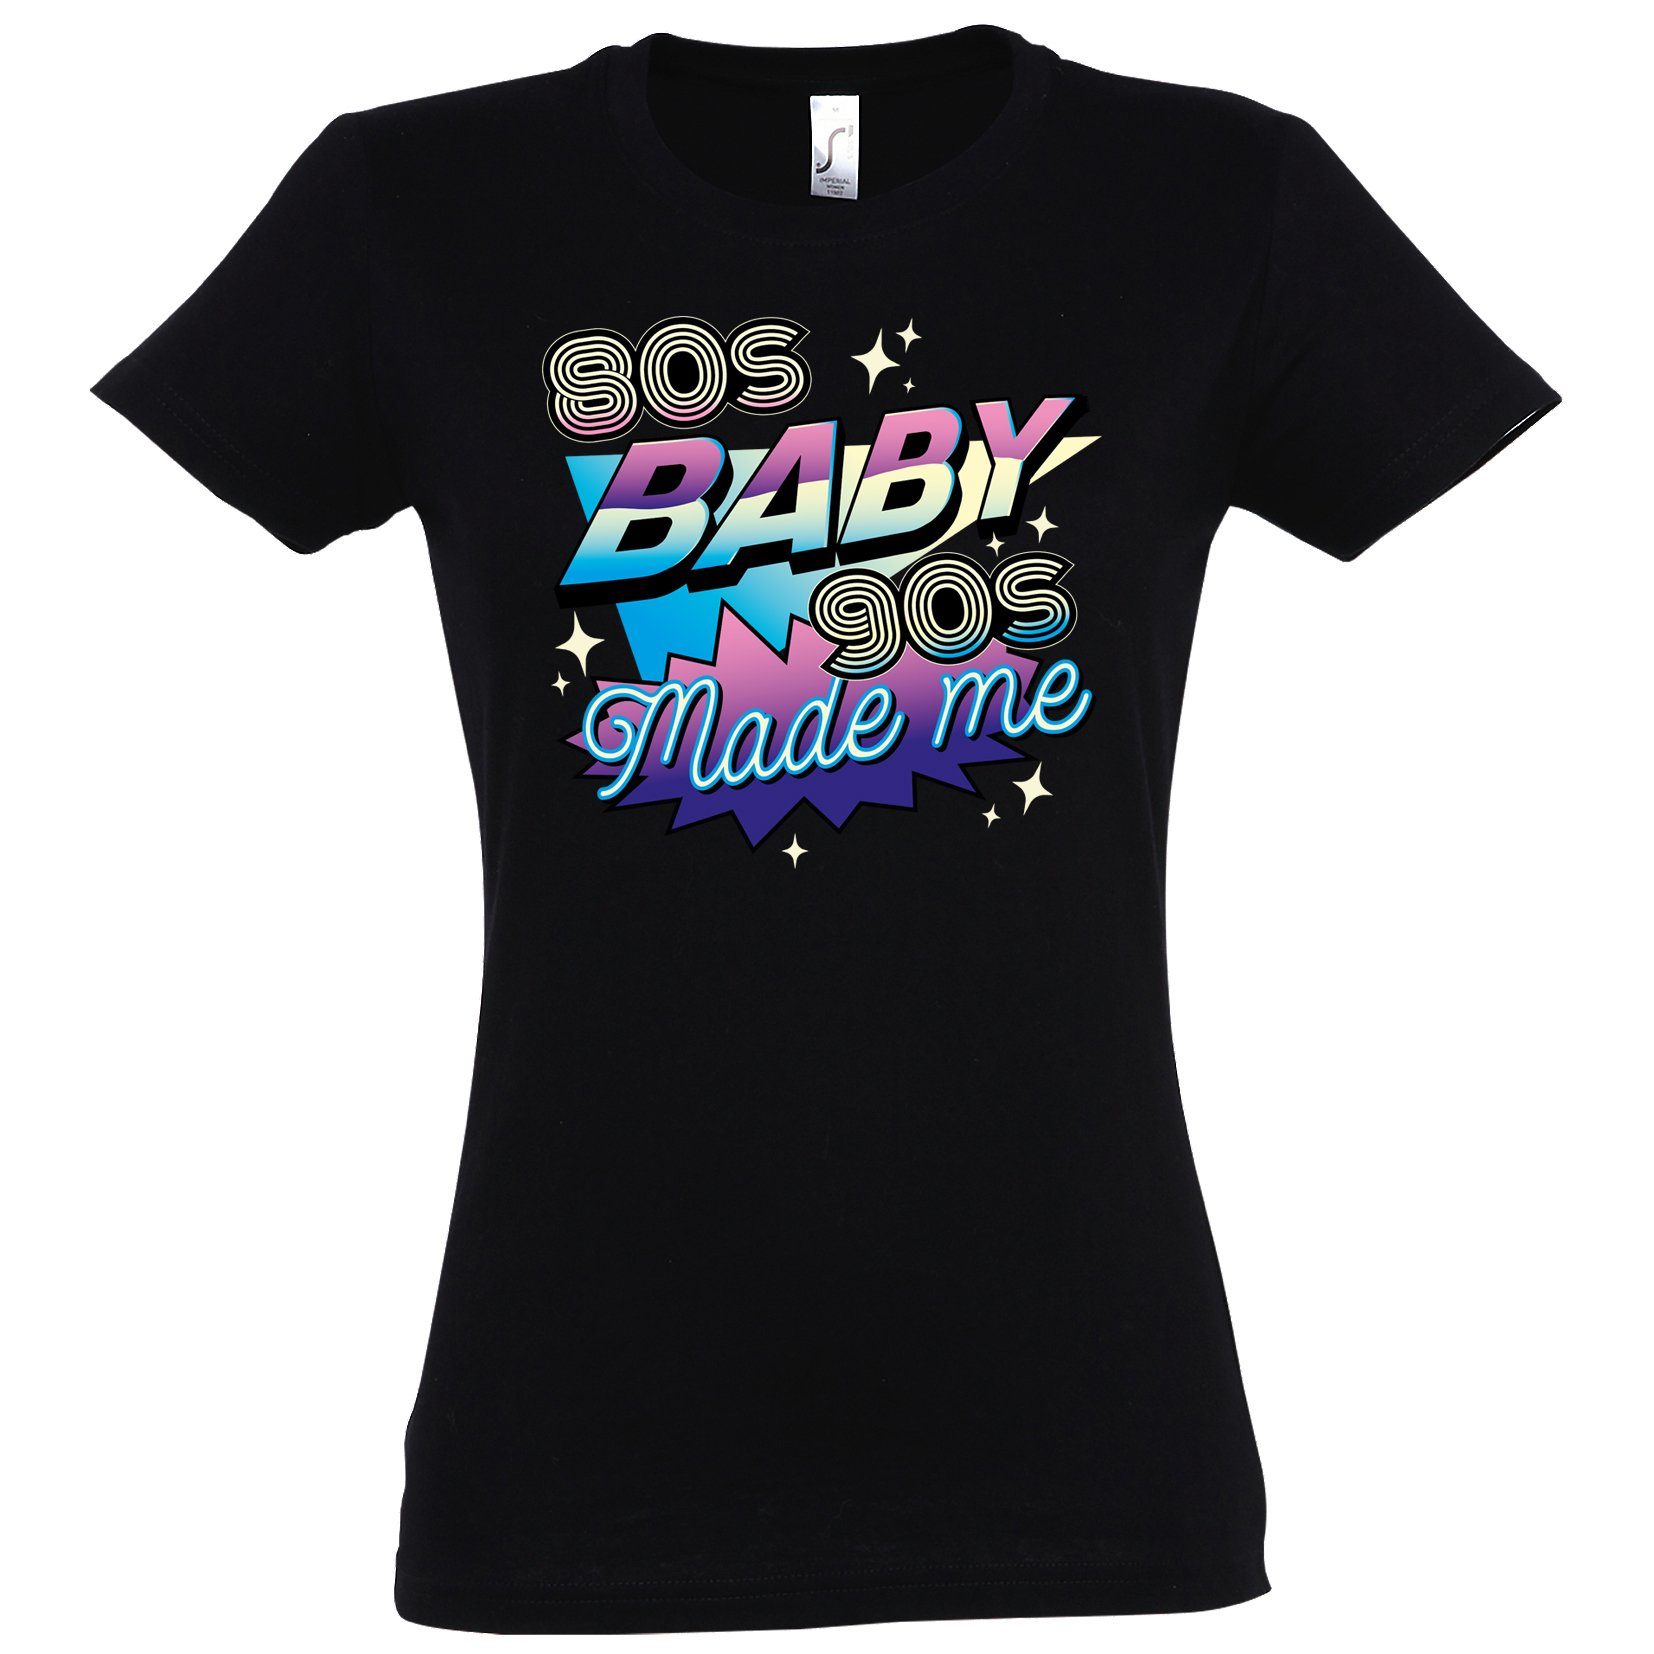 Youth Designz T-Shirt 80'S BABY 90'S Made me Damen Shirt mit Trendigem Retro Look Schwarz | T-Shirts